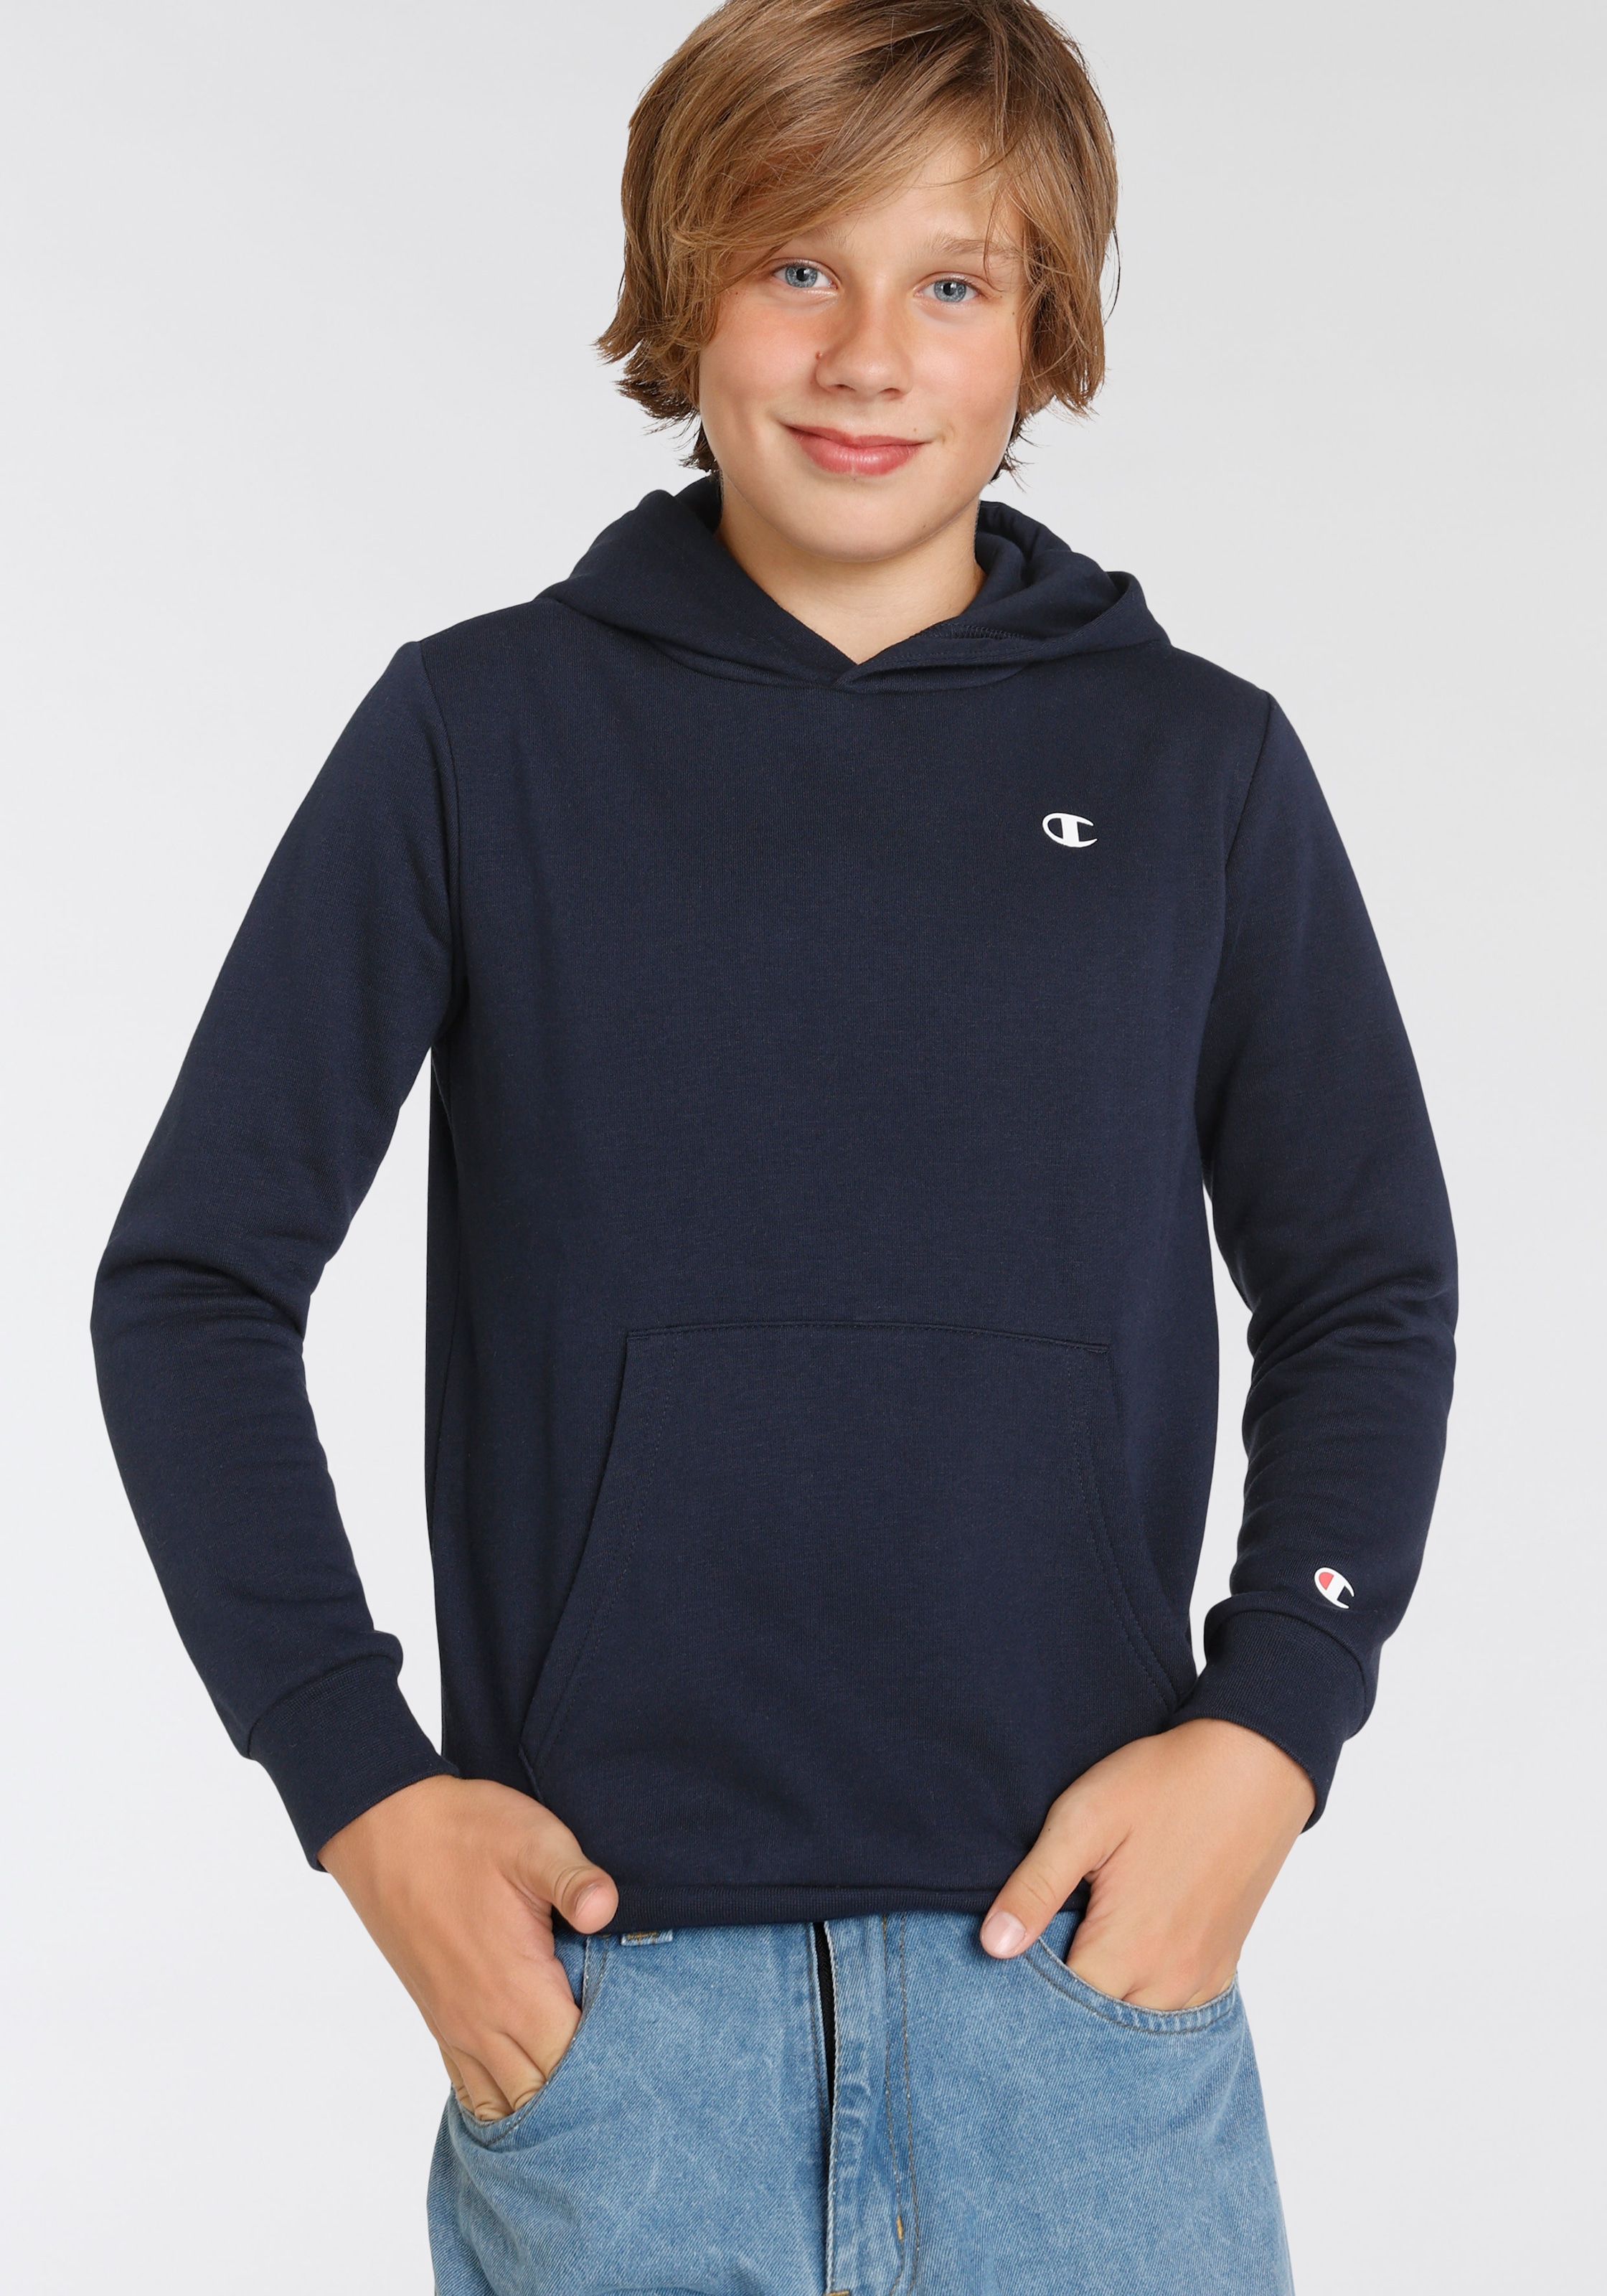 Trendige Champion Sweatshirt »Basic Hooded kaufen versandkostenfrei - für Sweatshirt Kinder«